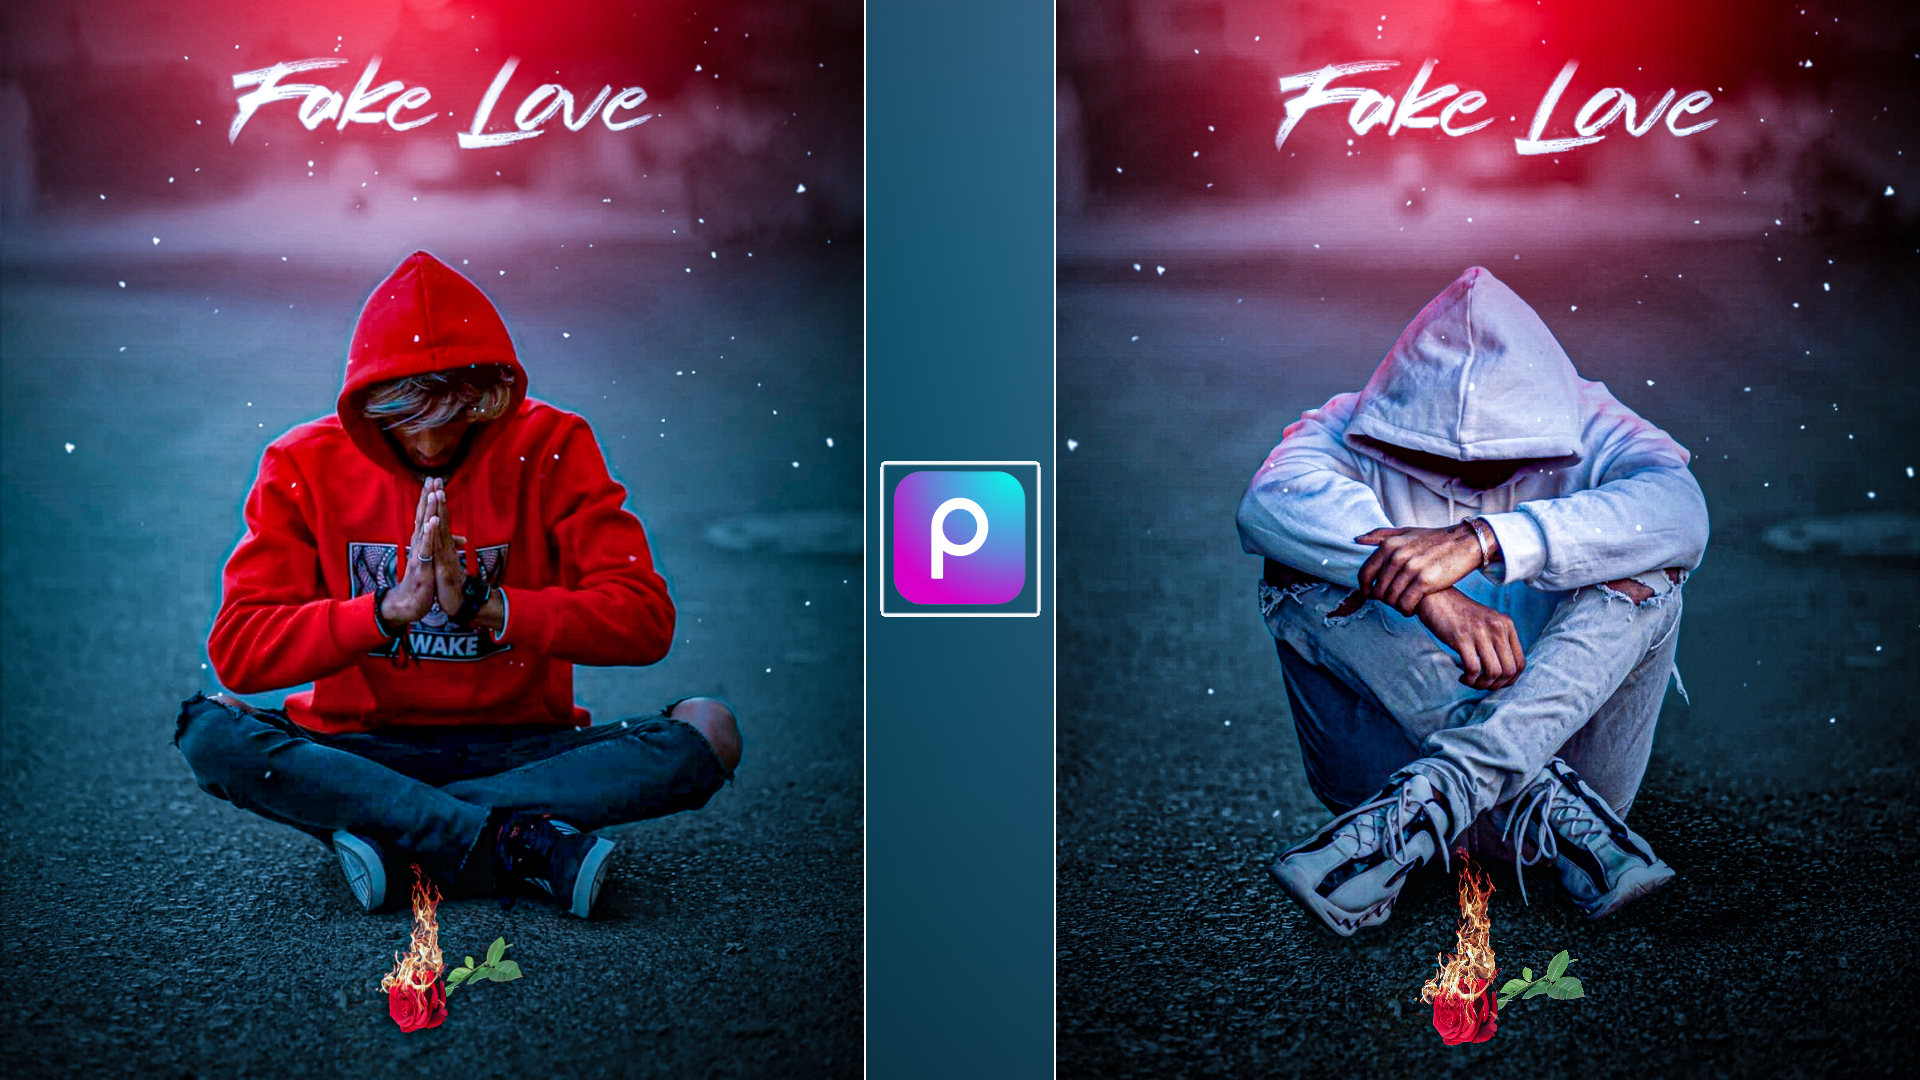 fake love photo editing picsart - DJ PHOTO EDITING